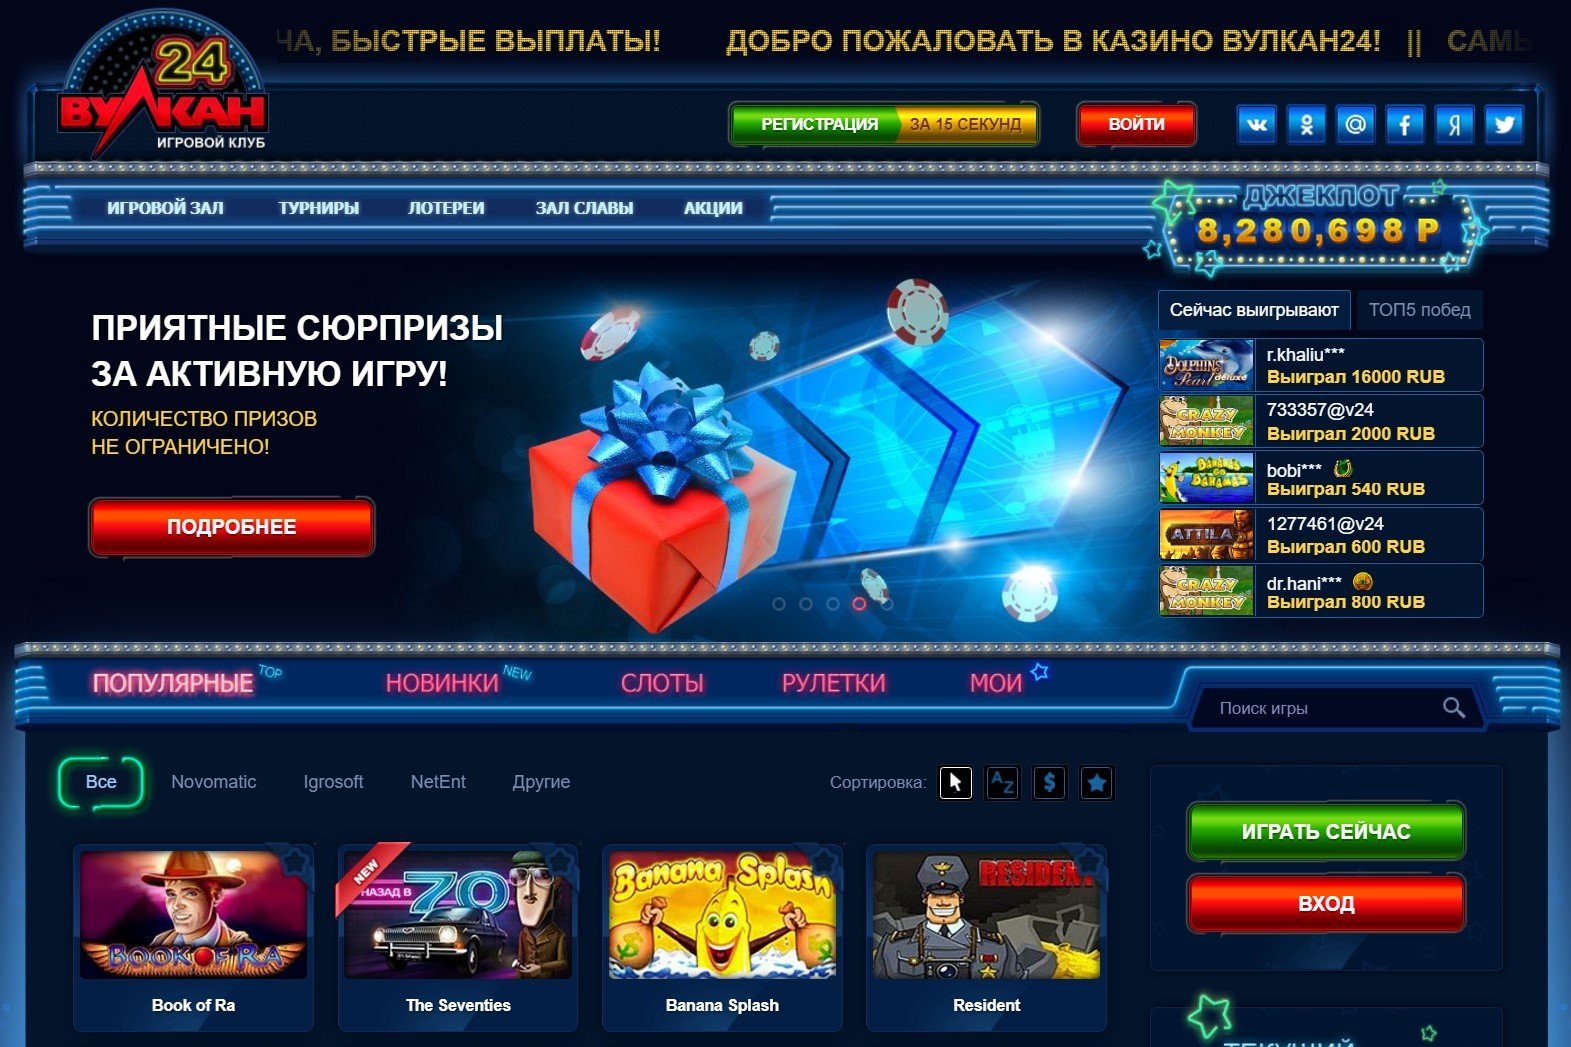 Вулкан 24 казино официальный сайт мобильная версия чат рулетка онлайн с телефона без регистрации бесплатно без скачивания на русском девушками